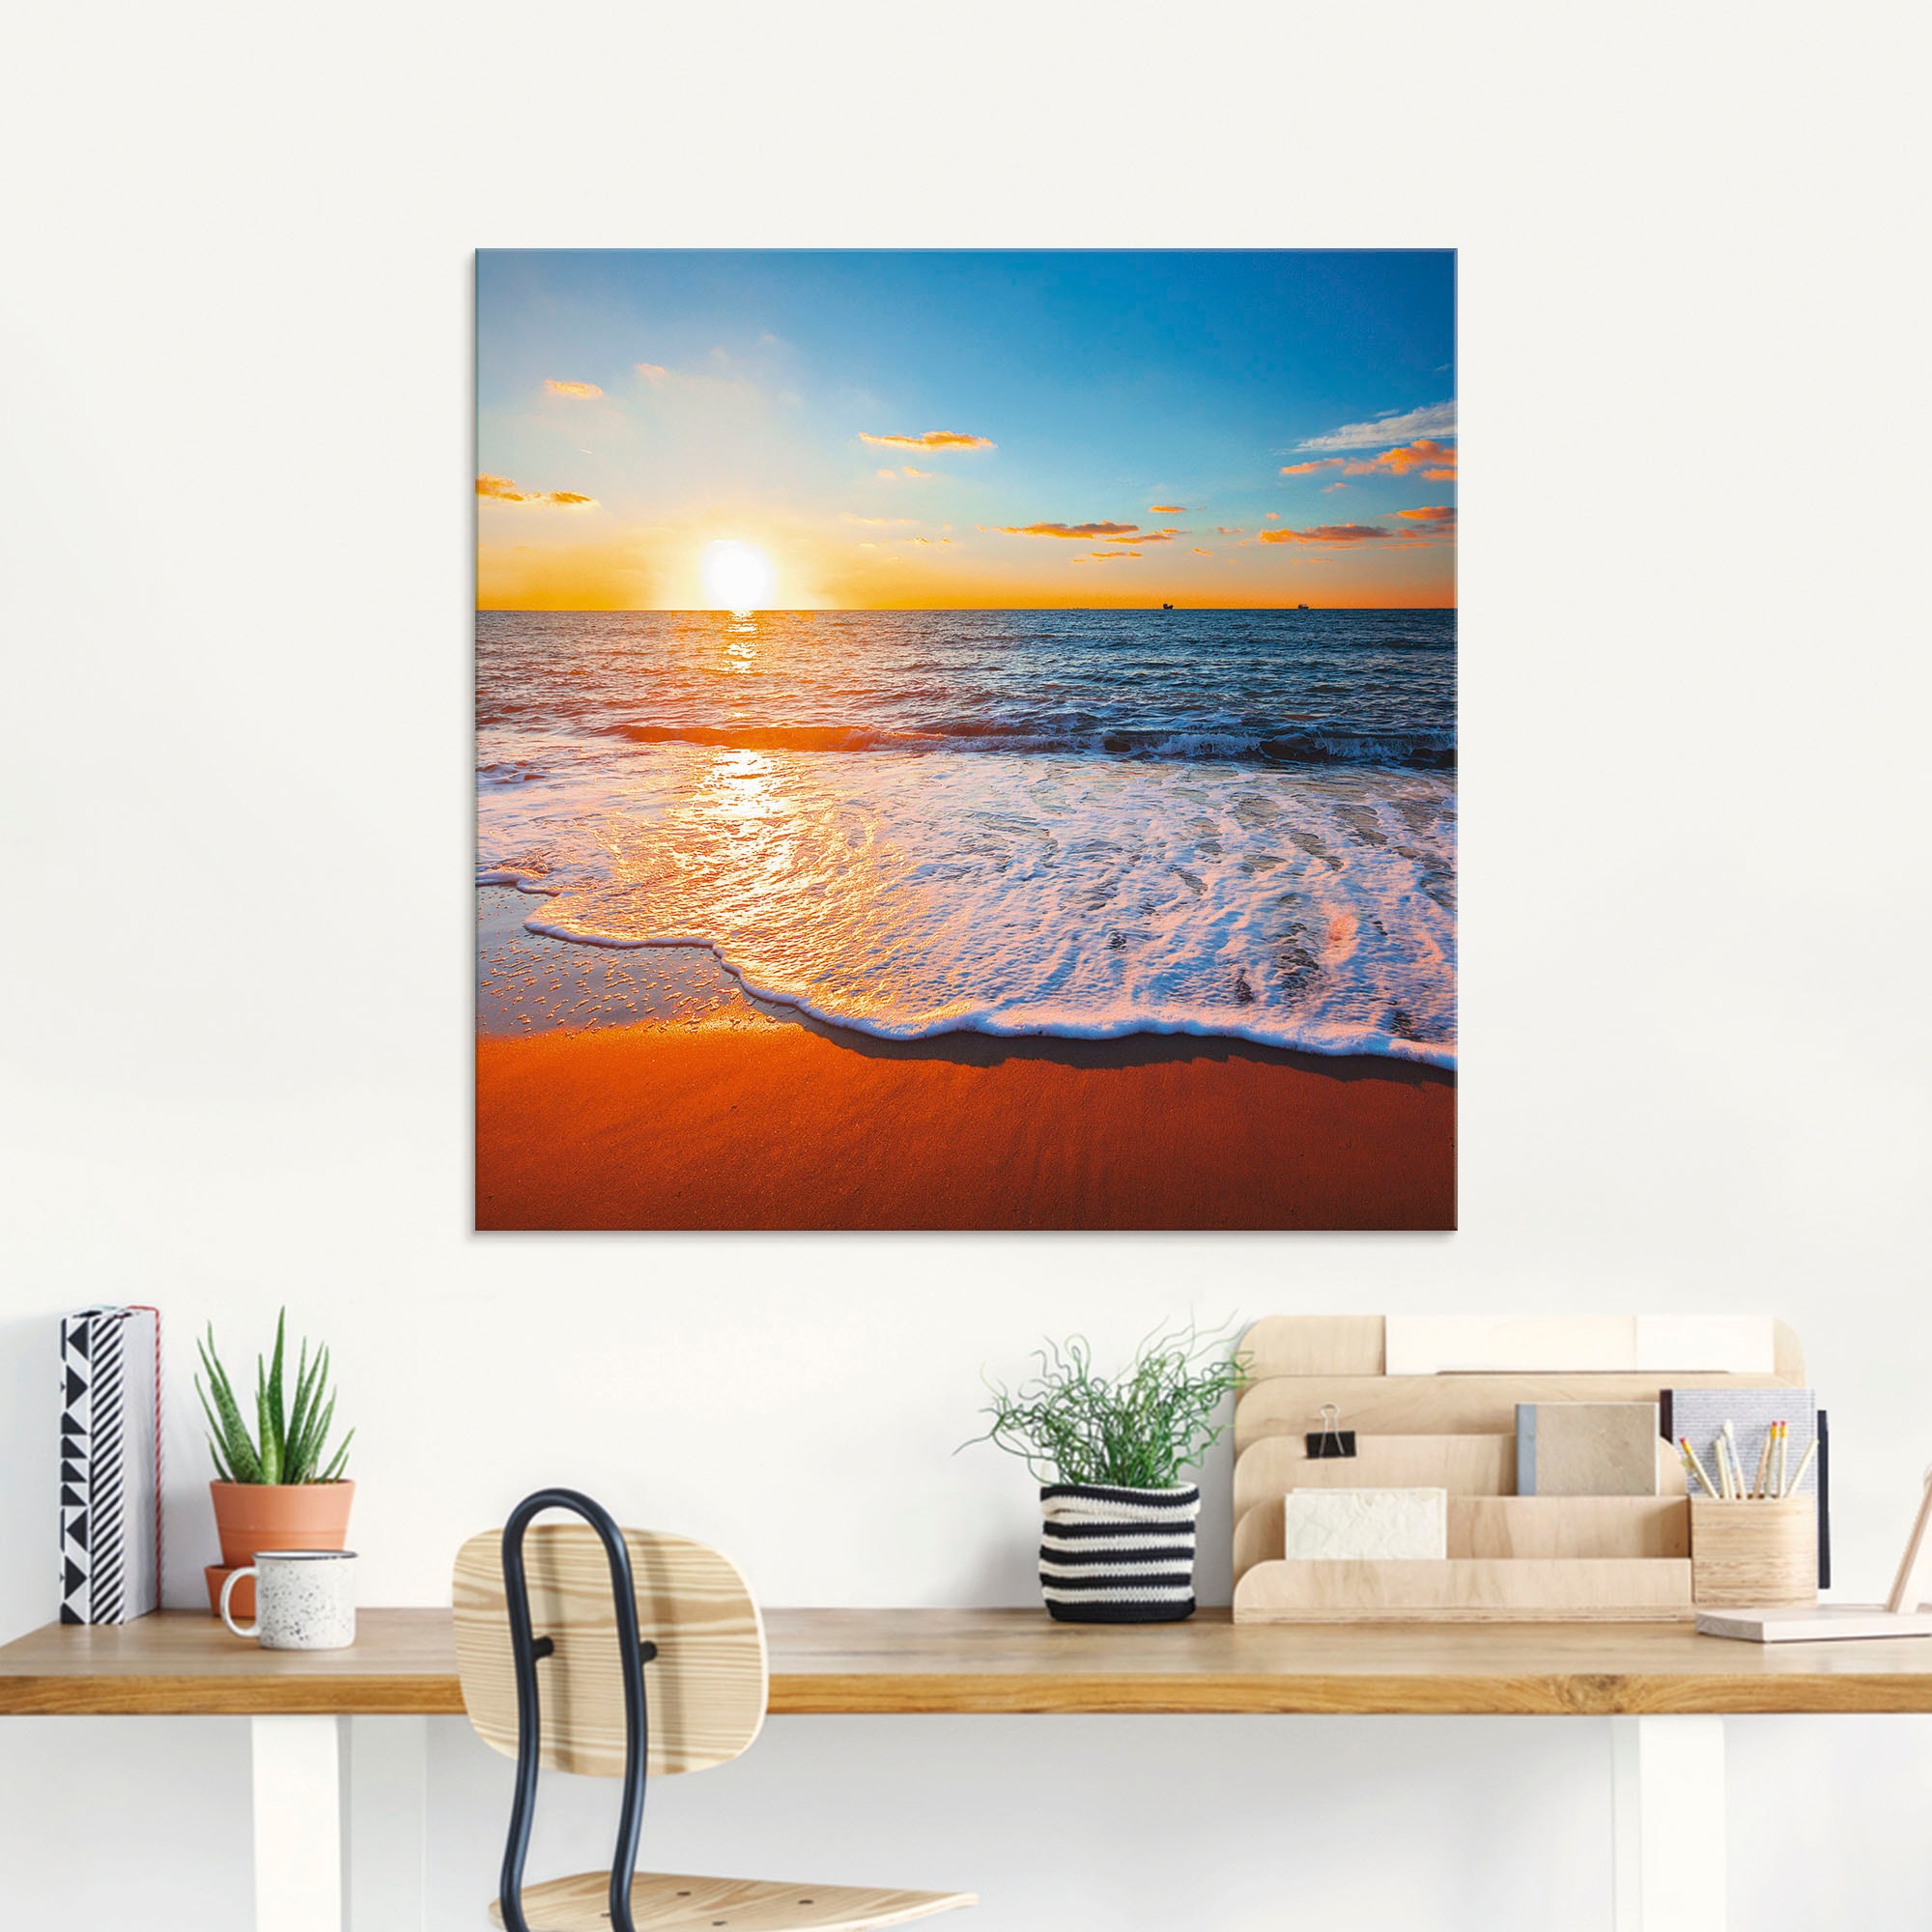 Artland Glasbild »Sonnenuntergang und das Raten kaufen St.) Strand, Meer«, (1 auf